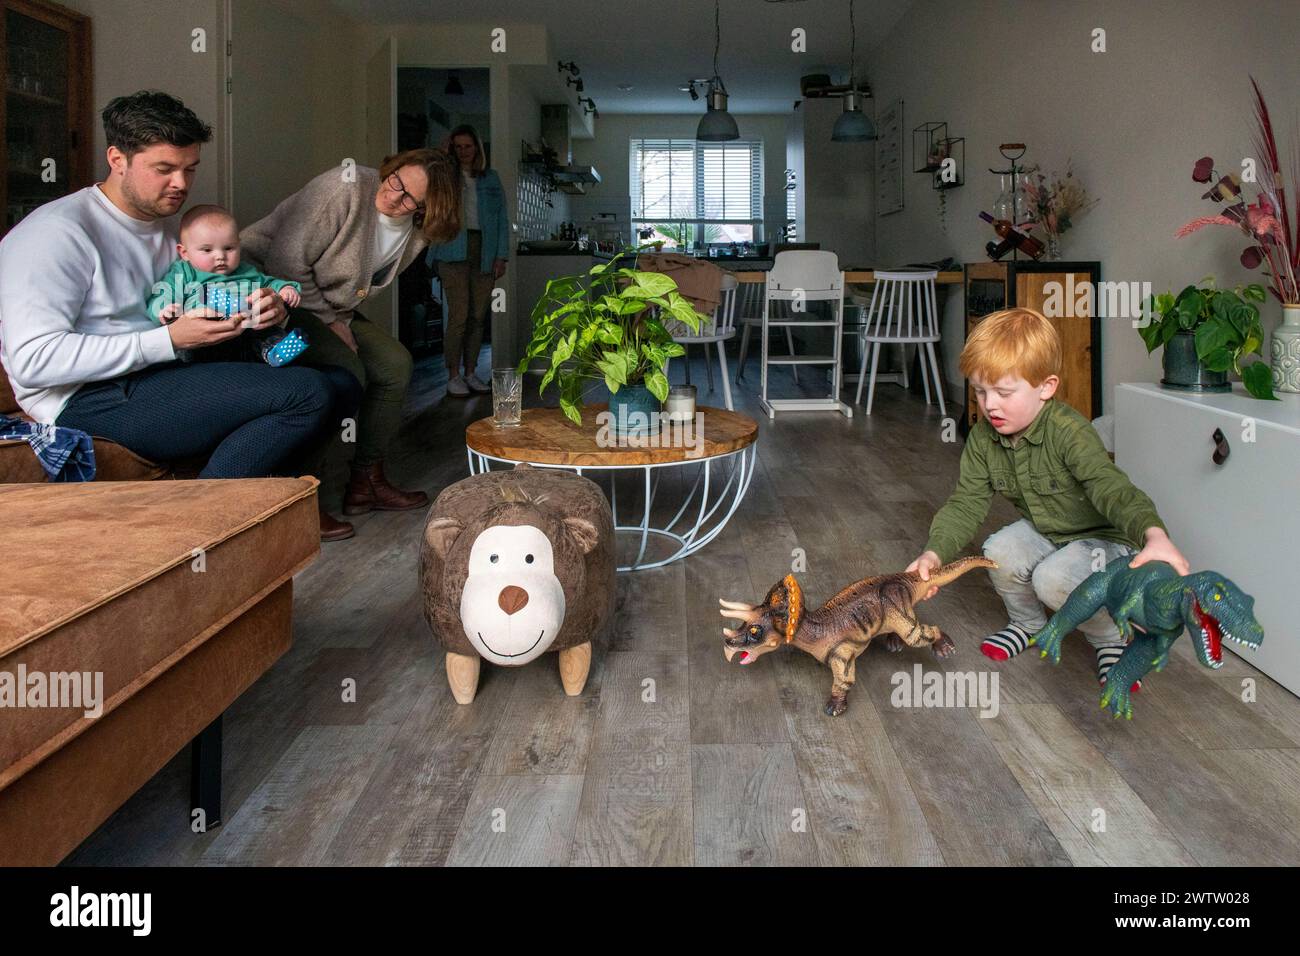 Eine Familie verbringt Zeit zusammen drinnen, mit einem Mann, der ein Baby hält, einer Frau, die das Kind ansieht, und einem kleinen Jungen, der mit Dinosaurierspielzeug auf dem Boden spielt. Stockfoto